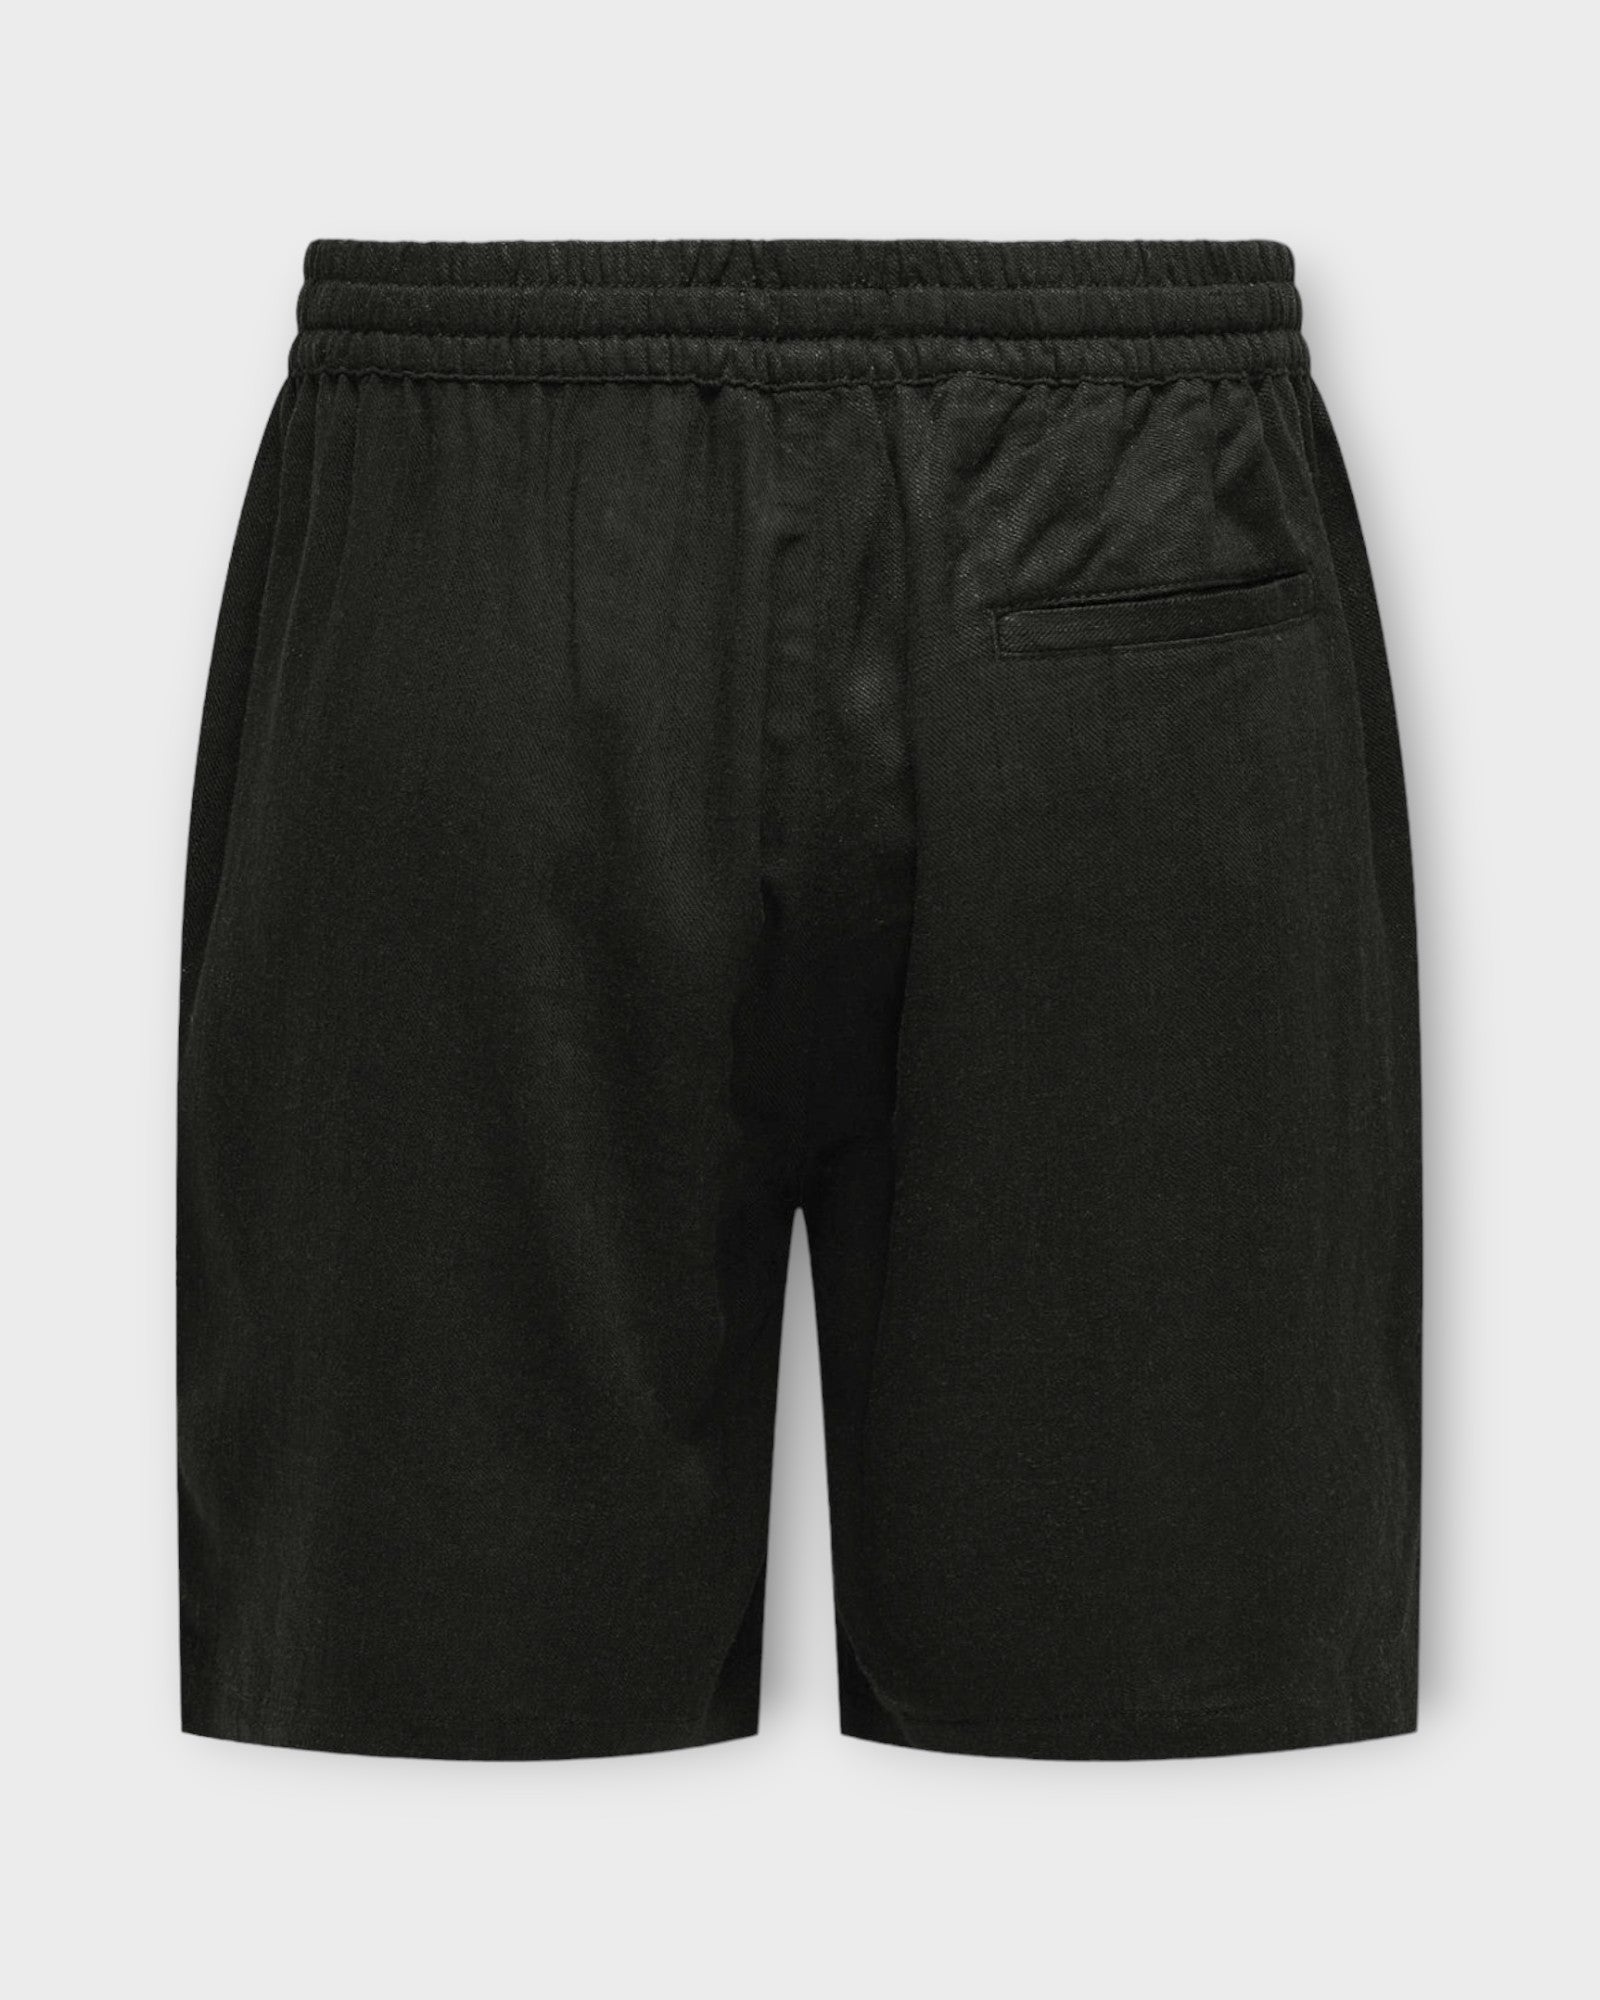 Only and Sons Stel Viscose Linen Shorts Black, sorte hør shorts til mænd. Her set bagfra.